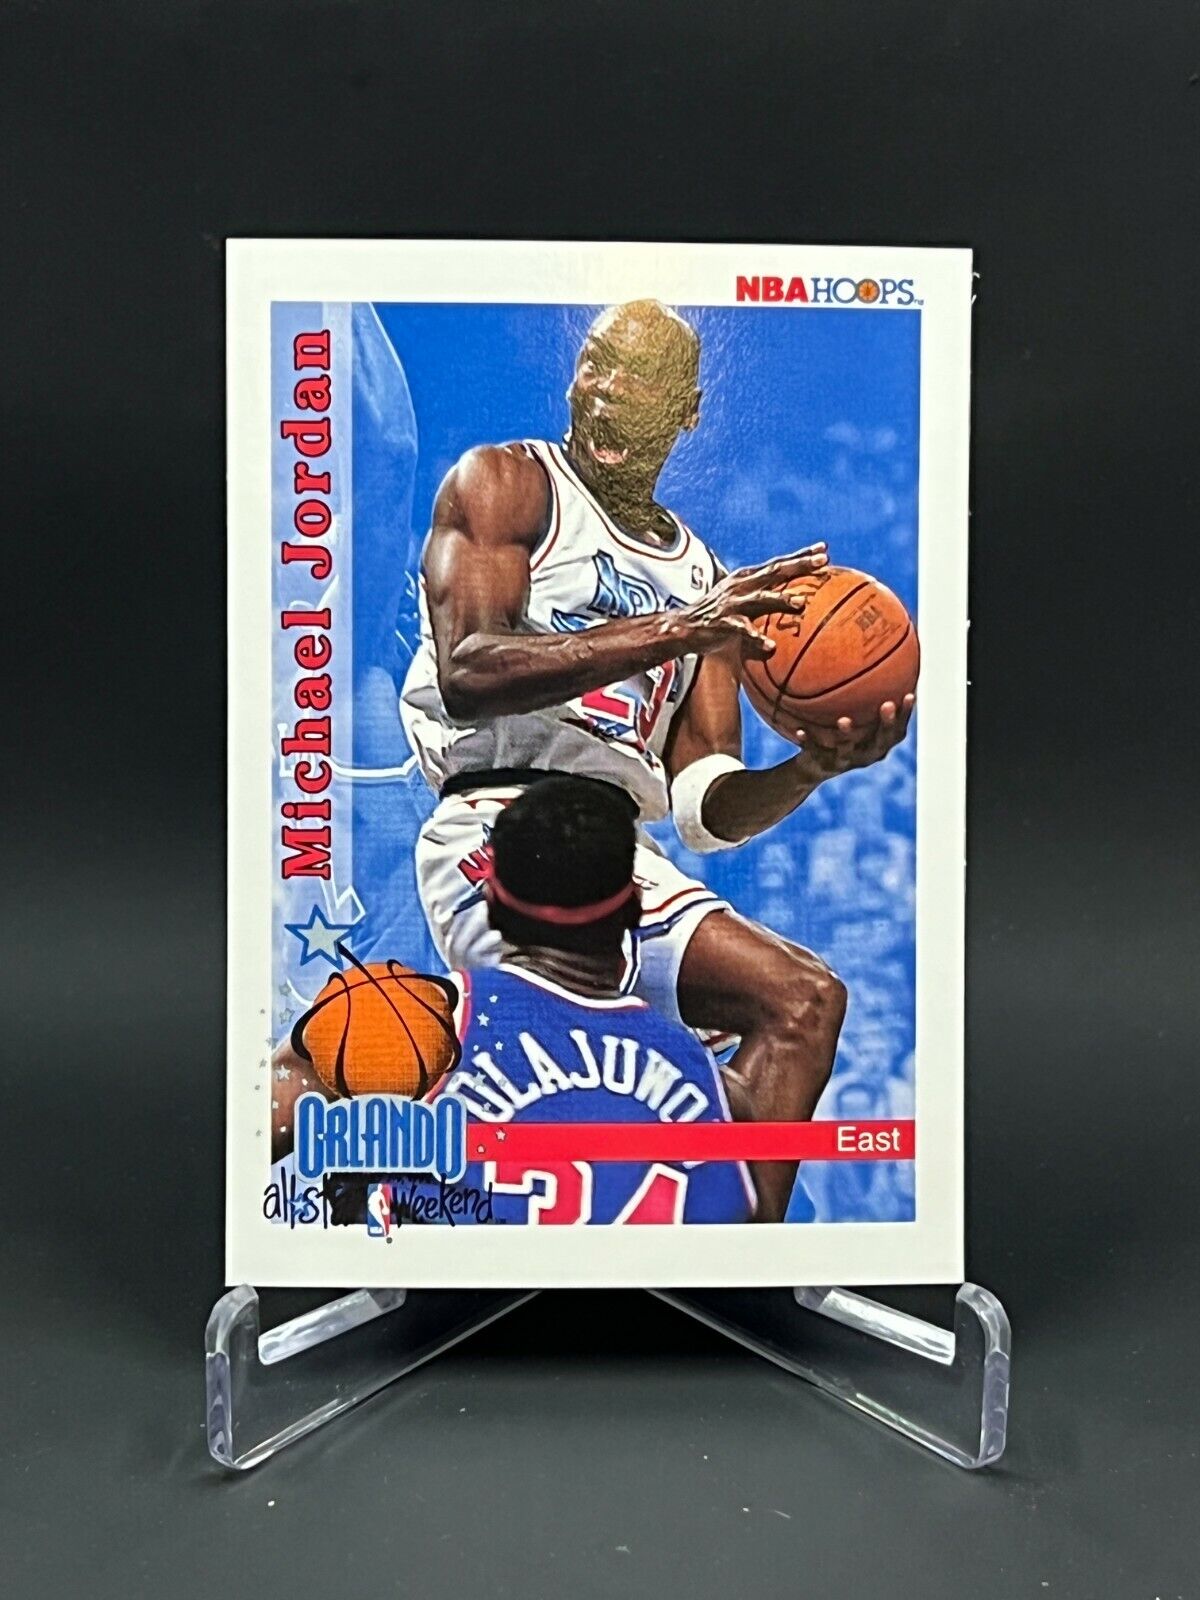 1992 NBA Hoops Michael Jordan All Stars Card #298